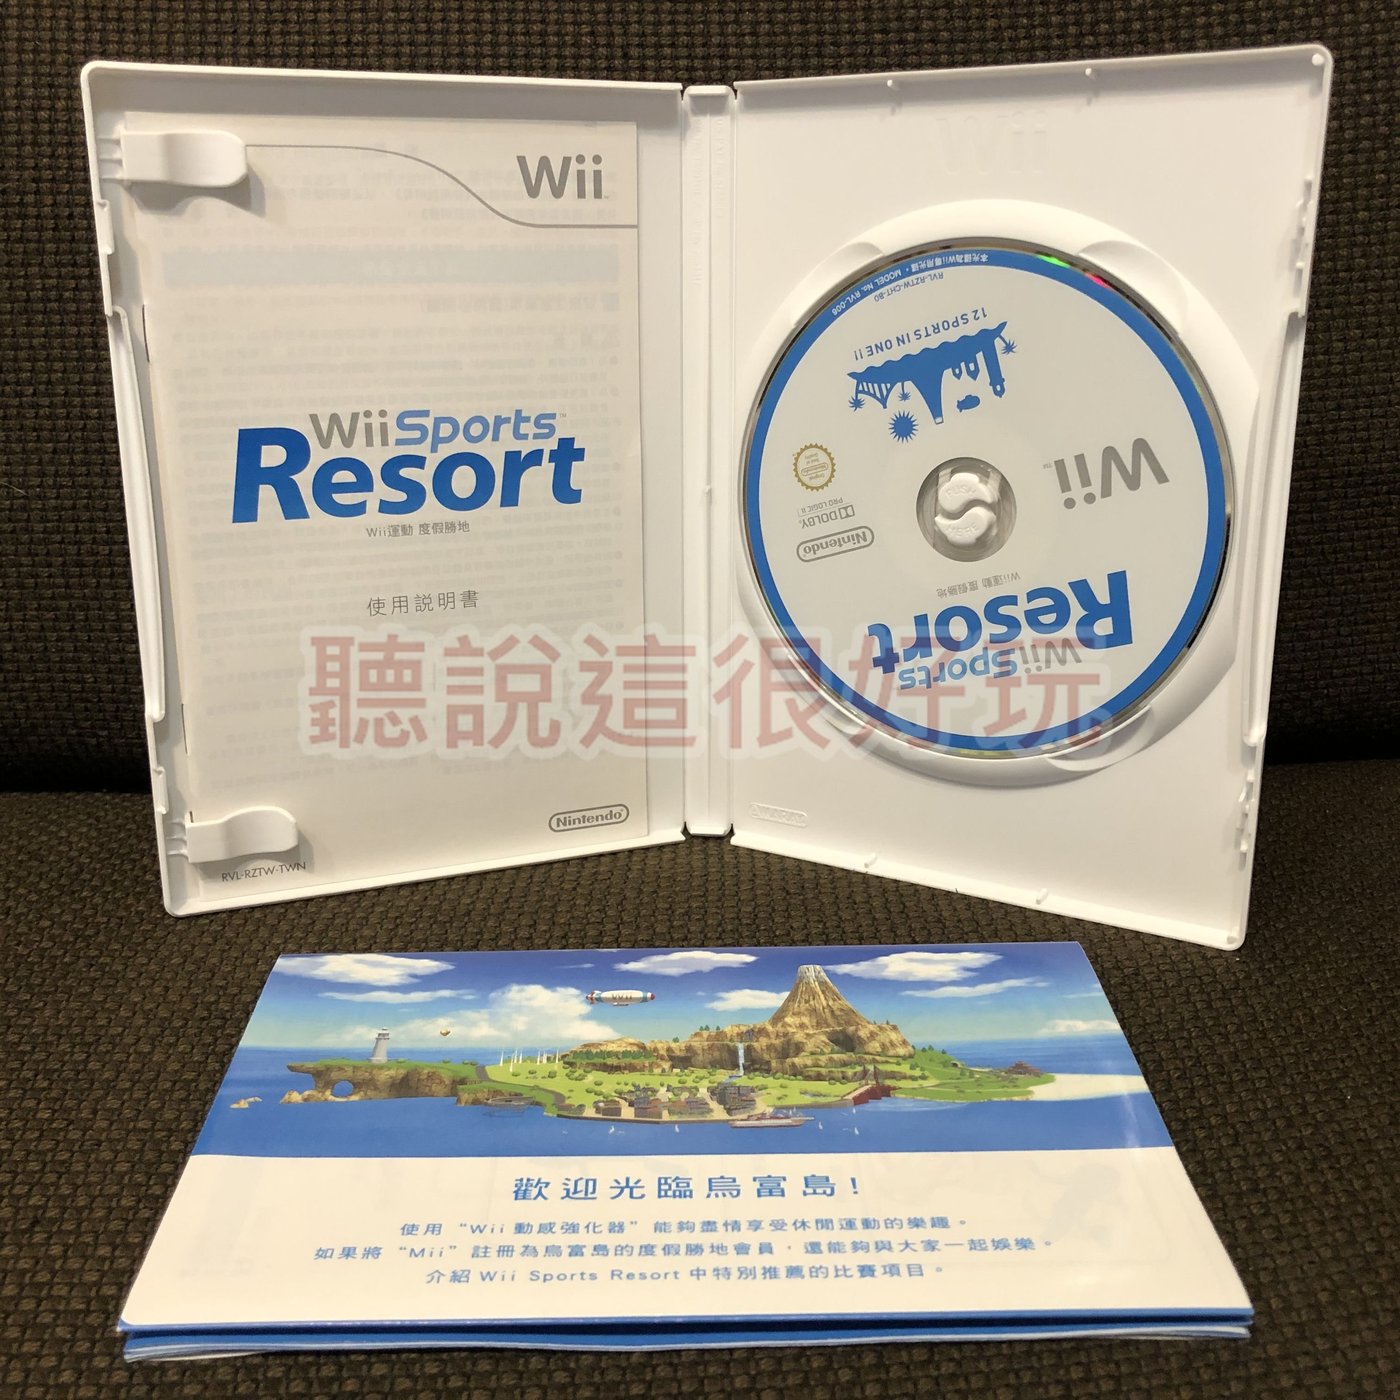 Wii 中文版運動度假勝地Wii Sports Resort wii 遊戲渡假勝地815 W922 